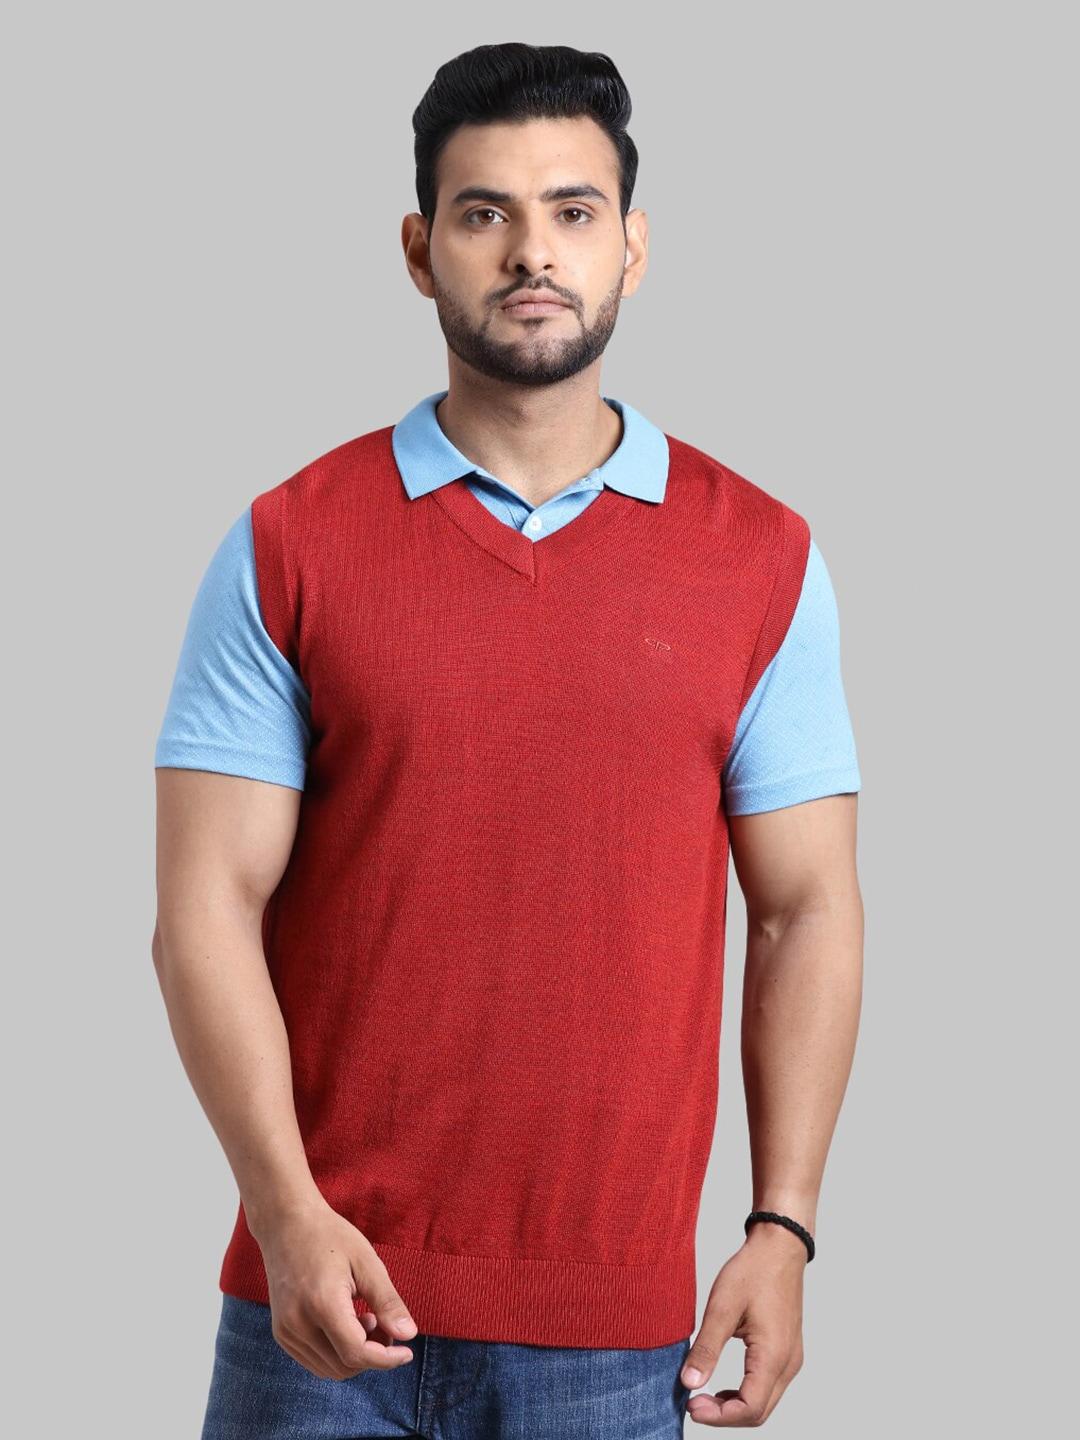 colorplus-men-red-solid-v-neck-wool-sweater-vest